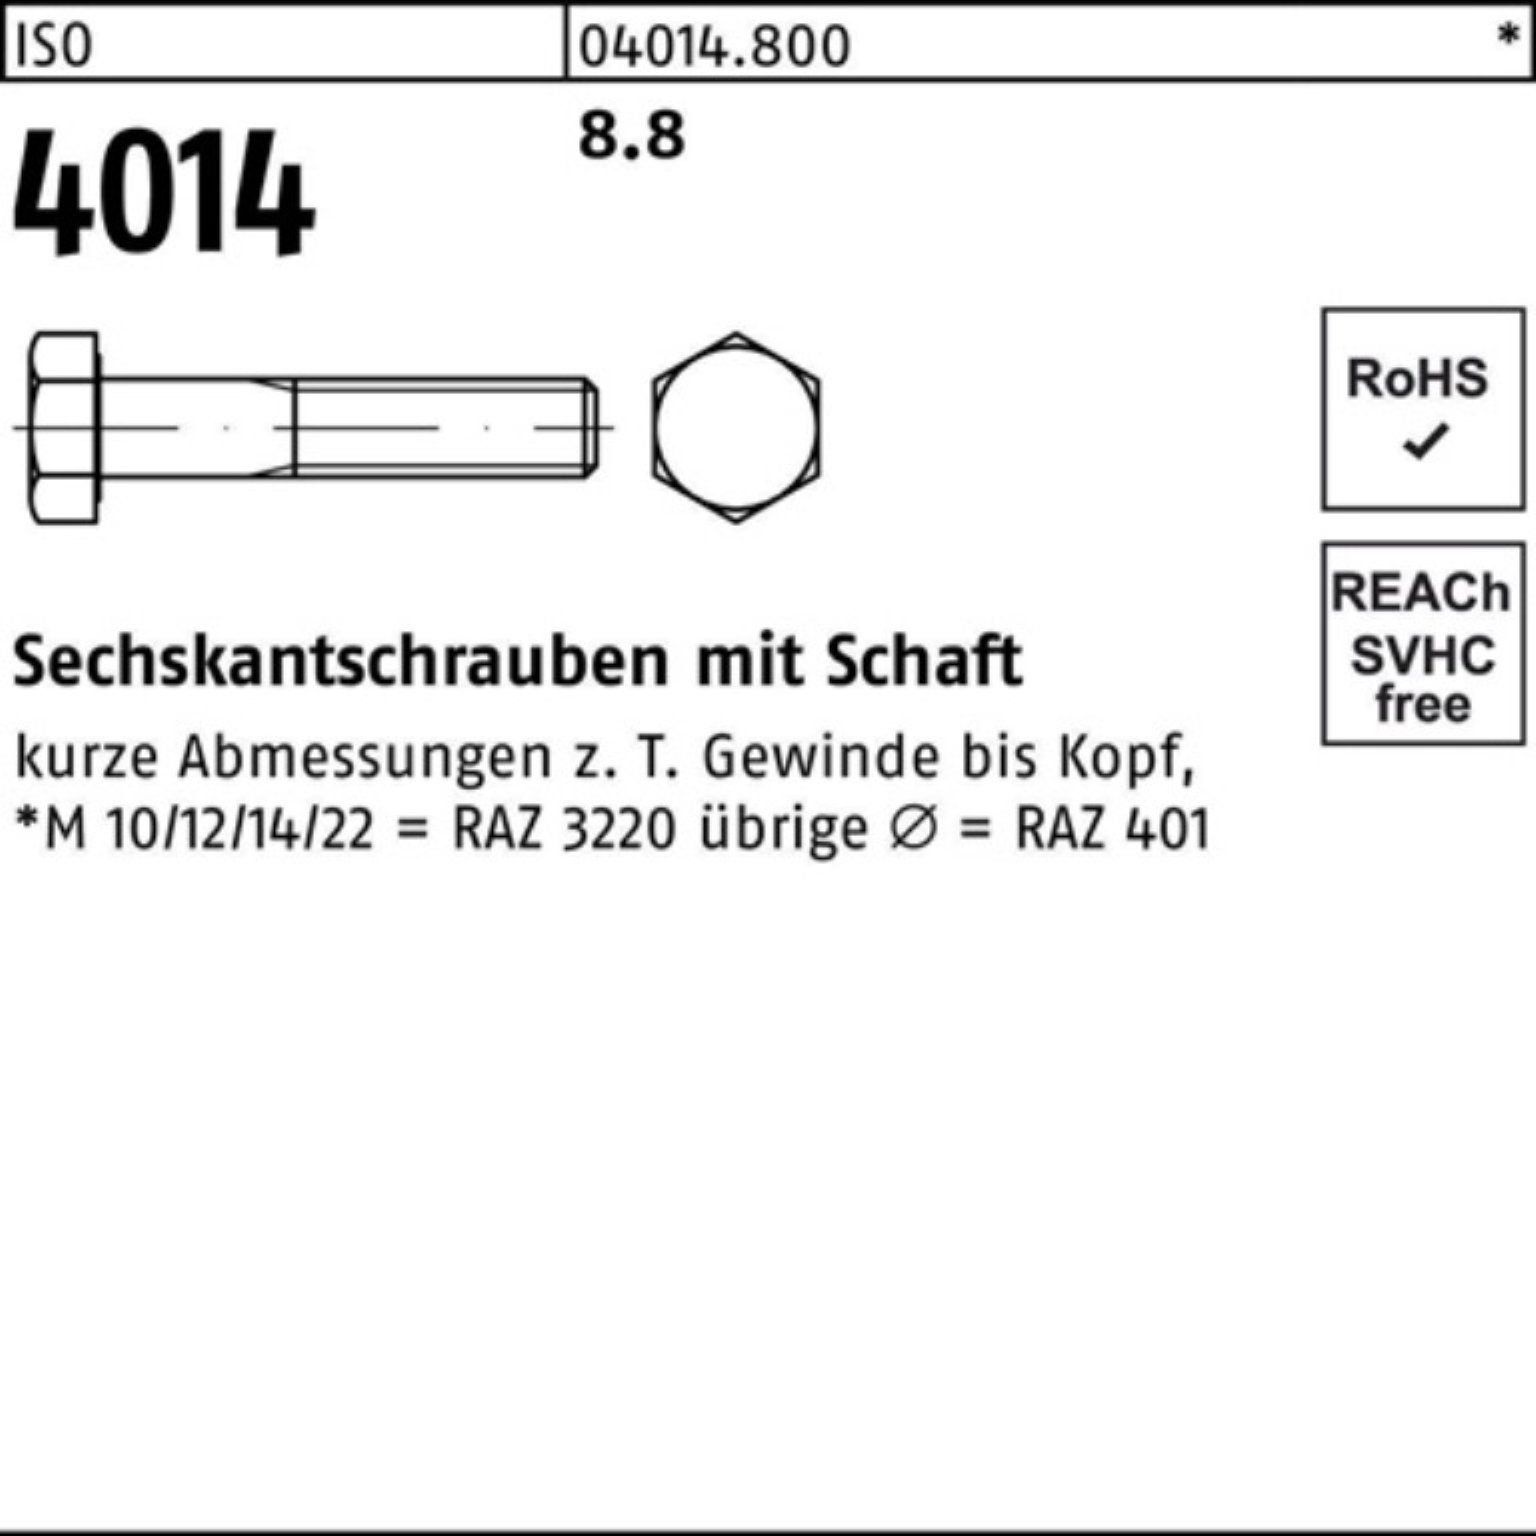 IS ISO Sechskantschraube 8.8 Stück Sechskantschraube M8x Bufab 100 180 Pack Schaft 100er 4014